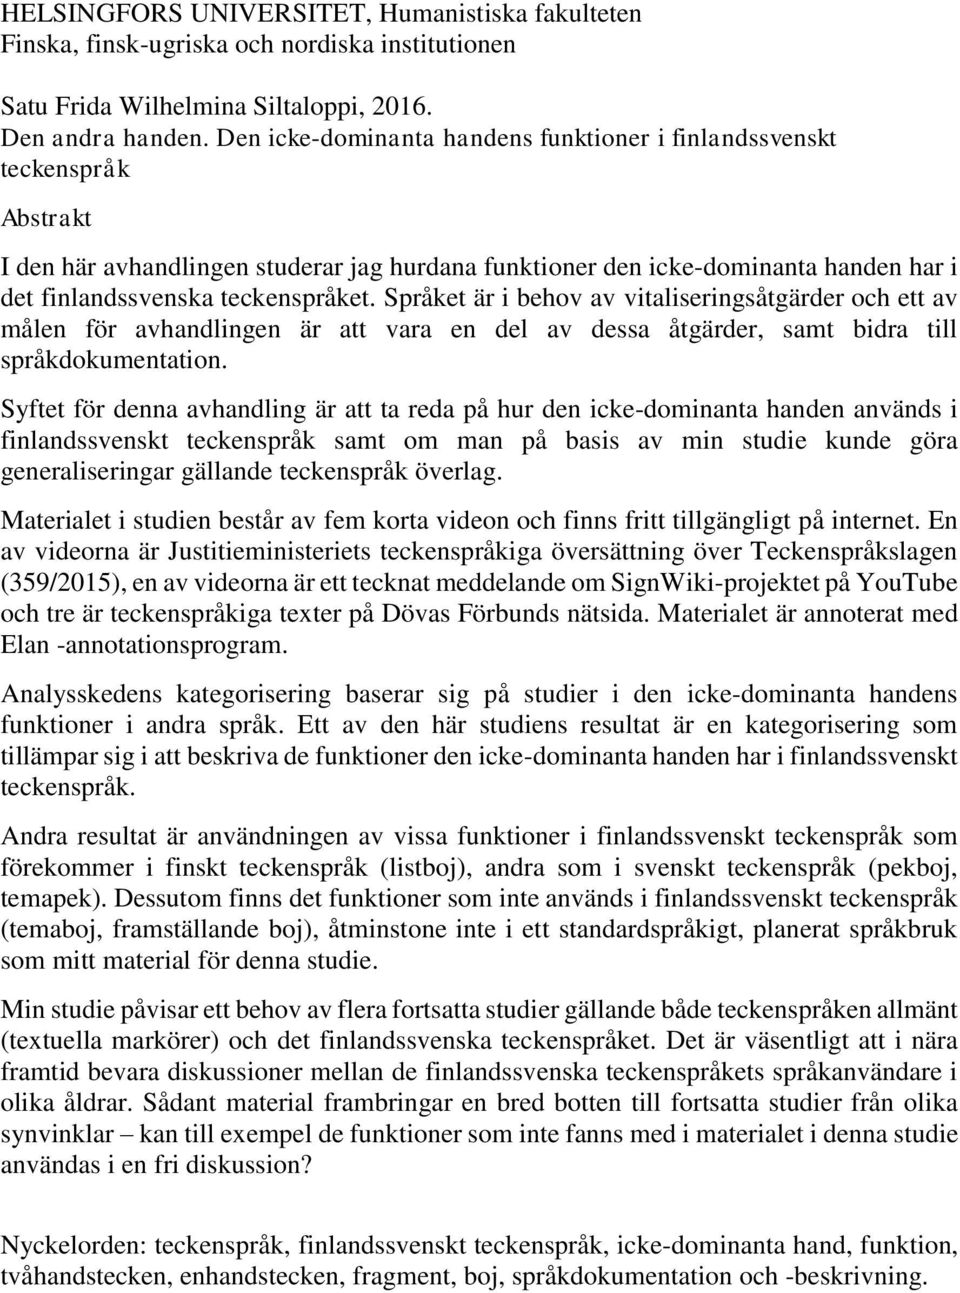 Den andra handen. Den icke-dominanta handens funktioner i finlandssvenskt  teckenspråk - PDF Gratis nedladdning